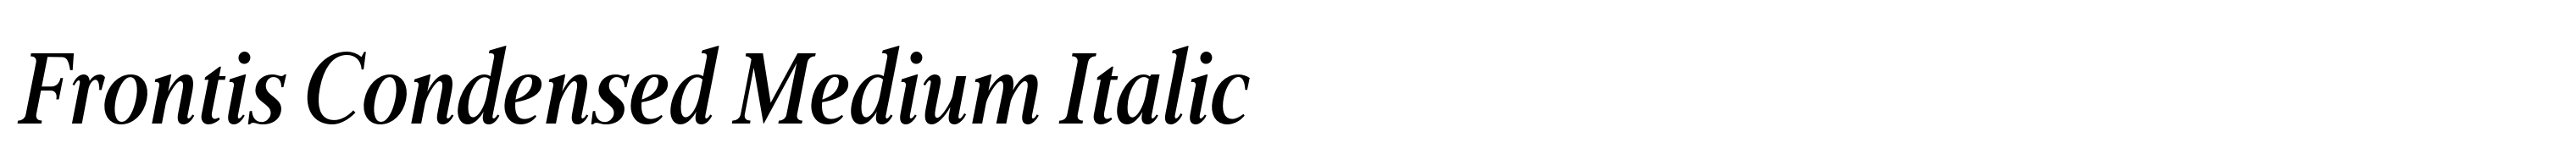 Frontis Condensed Medium Italic